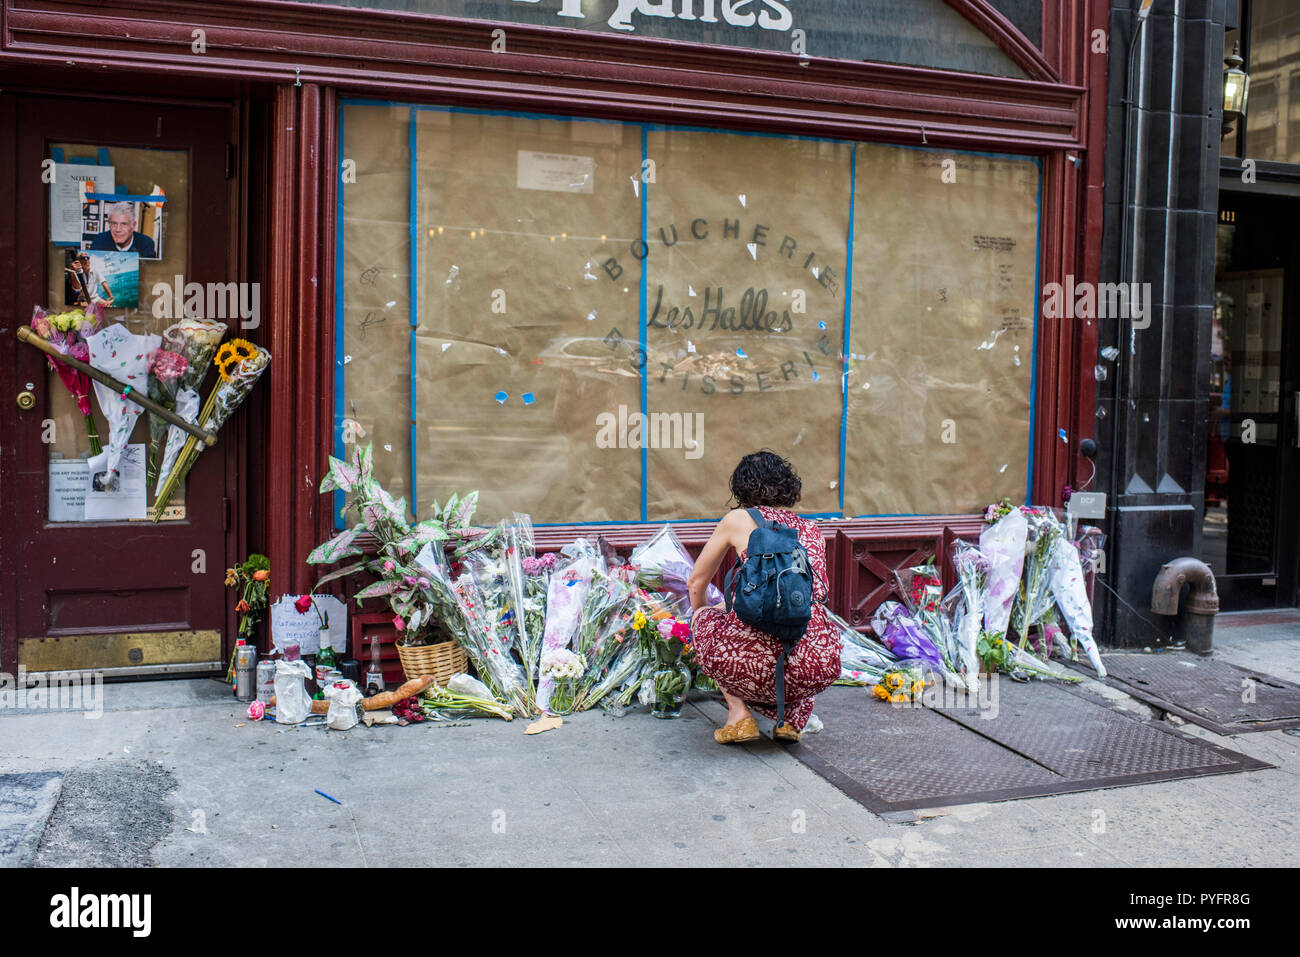 La Ciudad de Nueva York, EE.UU. - Junio 14, 2018: Los fans de Anthony Bourdain dejar flores y mensajes en la parte delantera de la Brasserie Les Halles de recuerdo, Park Avenue South Foto de stock